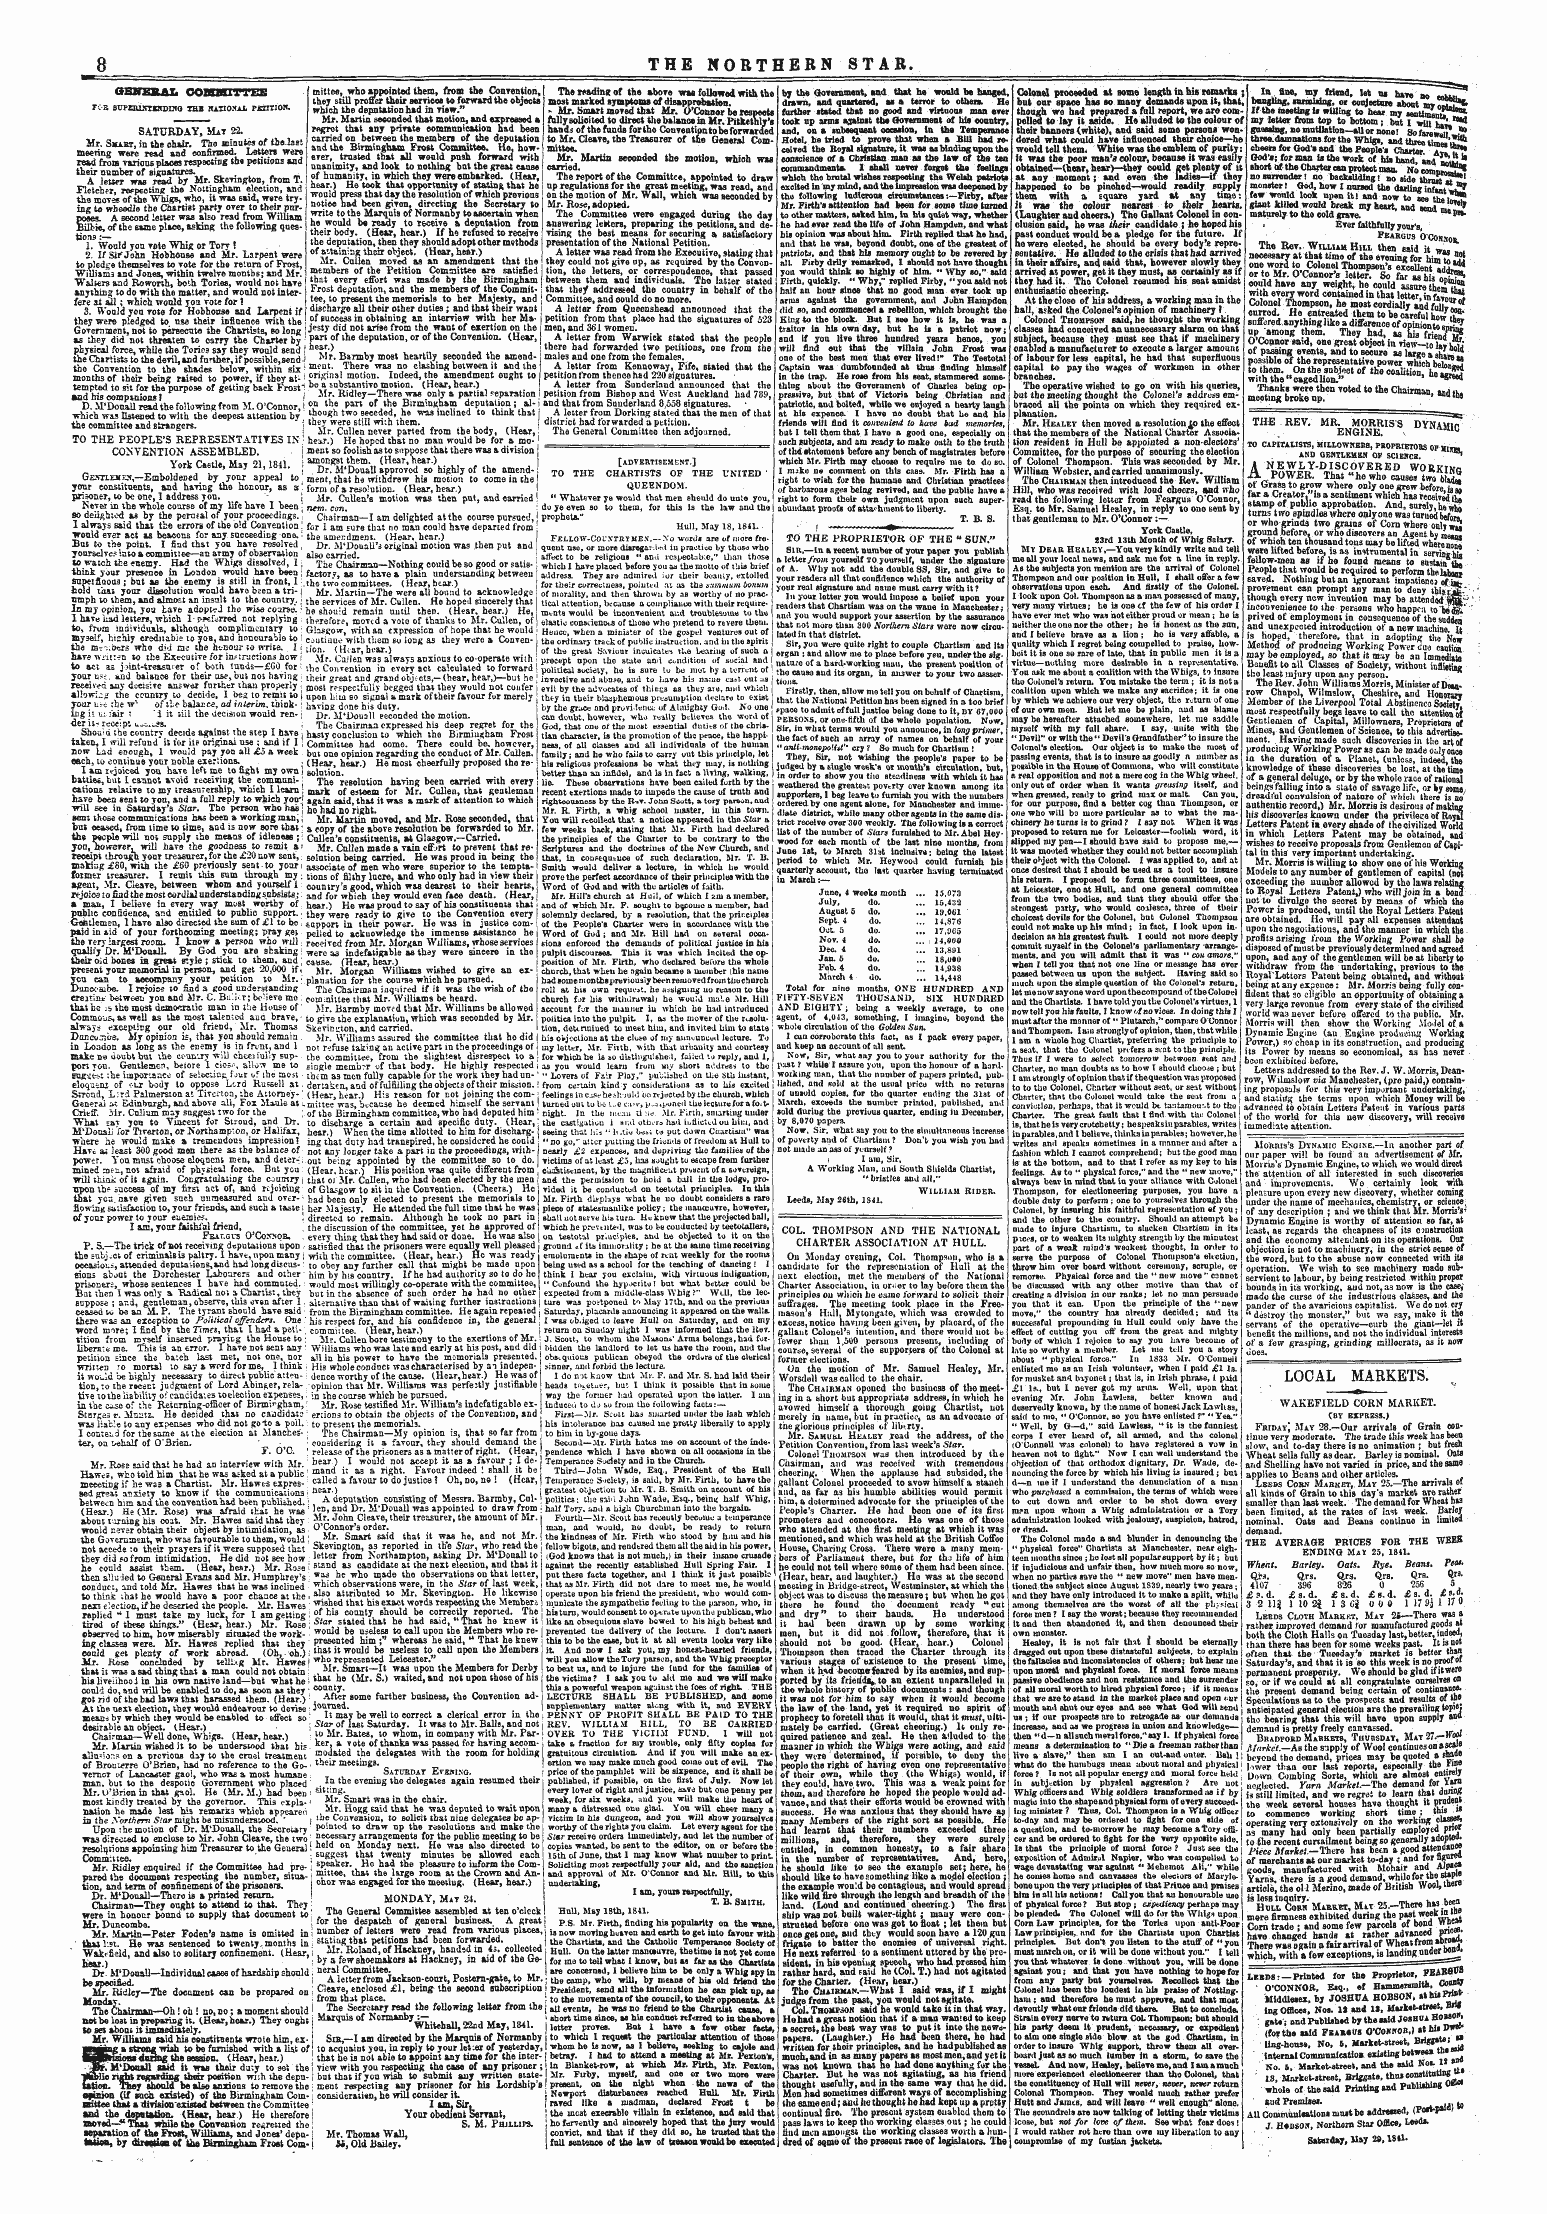 Northern Star (1837-1852): jS F Y, 4th edition - Hojihui Leeds:—Printed For Tbe Proprietor, Feabsfls ' ¦ ¦ O'Connor, Esq., Ef Hsm Mersmith, &Gt; ^™»